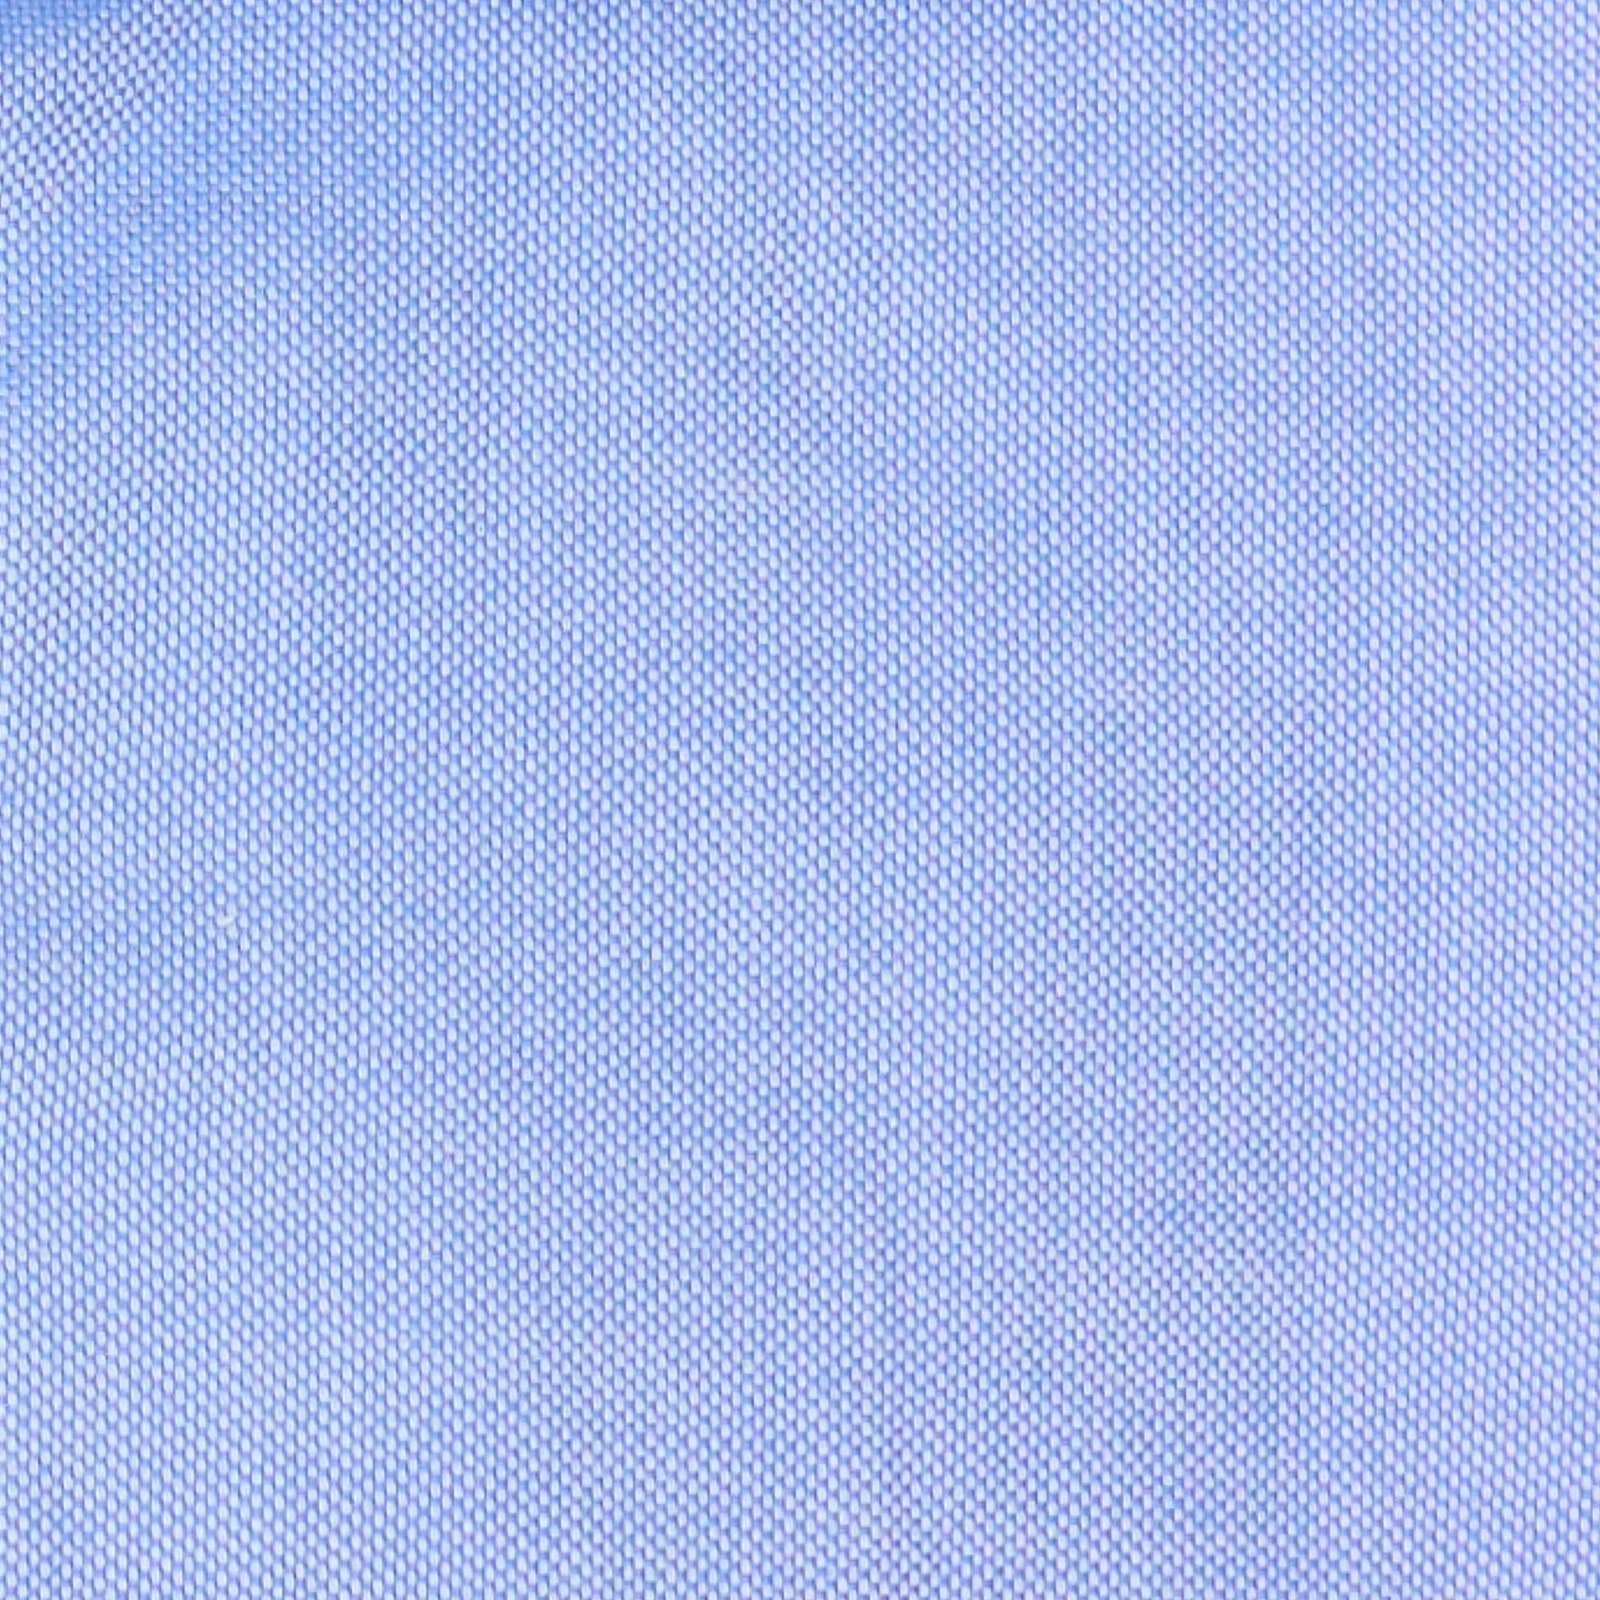 TINTORIA MATTEI 954 Blue Oxford Cotton Dress Shirt NEW